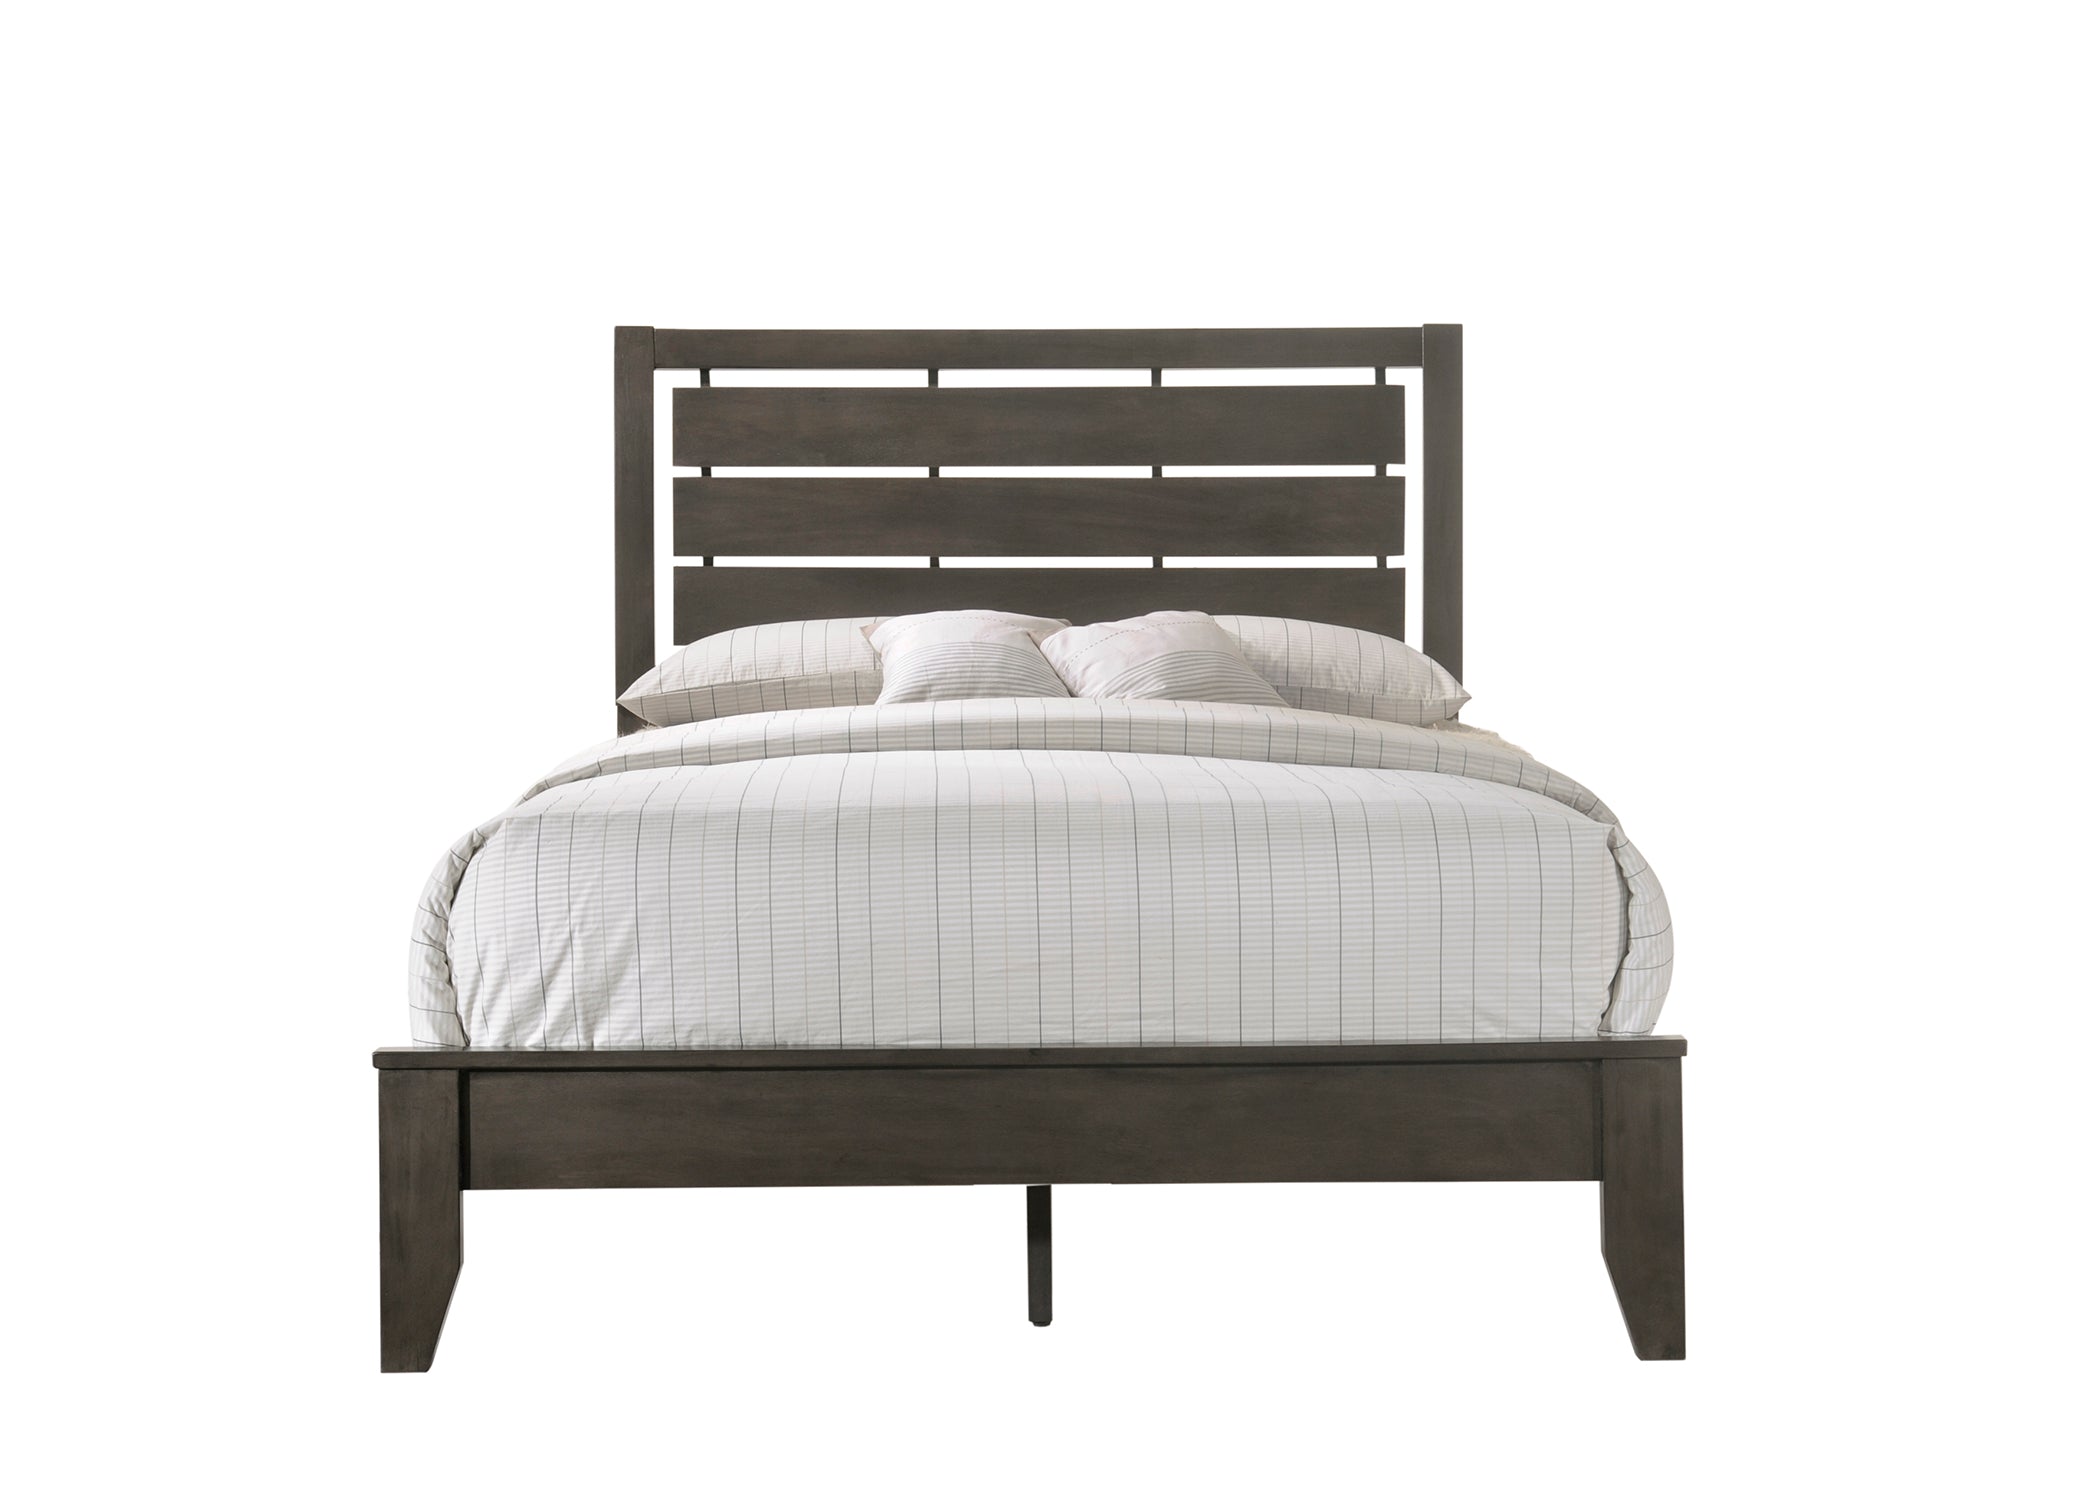 B4720 Evan - Queen Size Bed+Nightstand - Grey